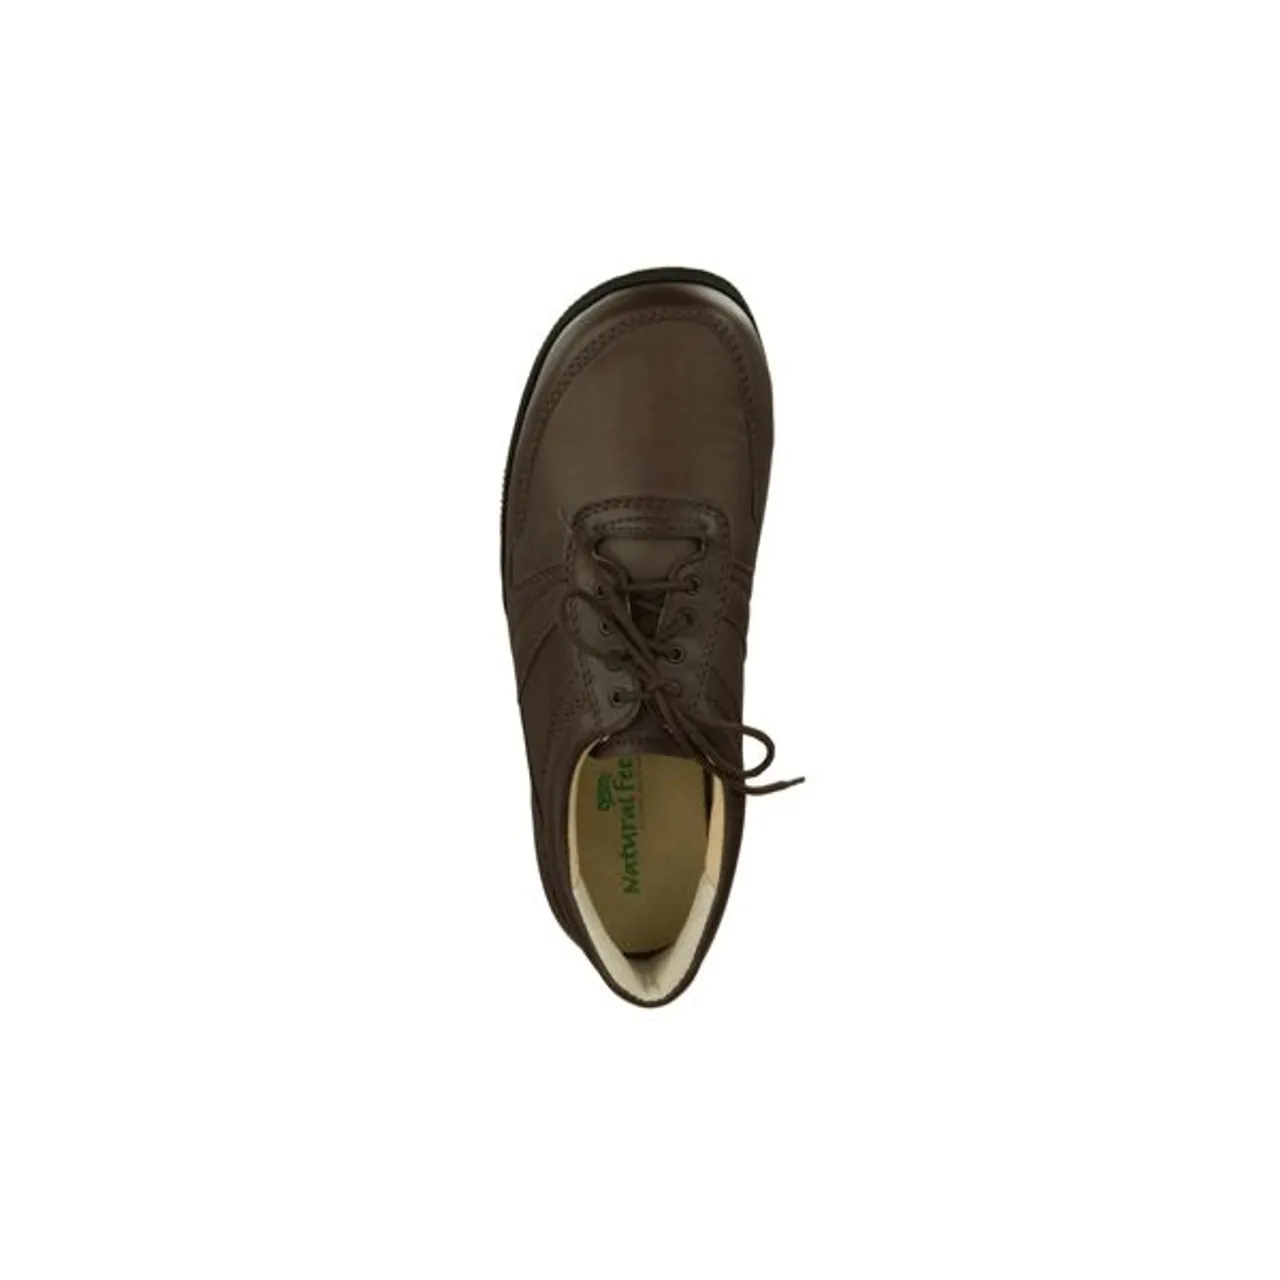 Schnürschuh NATURAL FEET "Karsten XL" Gr. 43, braun (dunkelbraun) Herren Schuhe Schnürschuh Schnürhalbschuhe